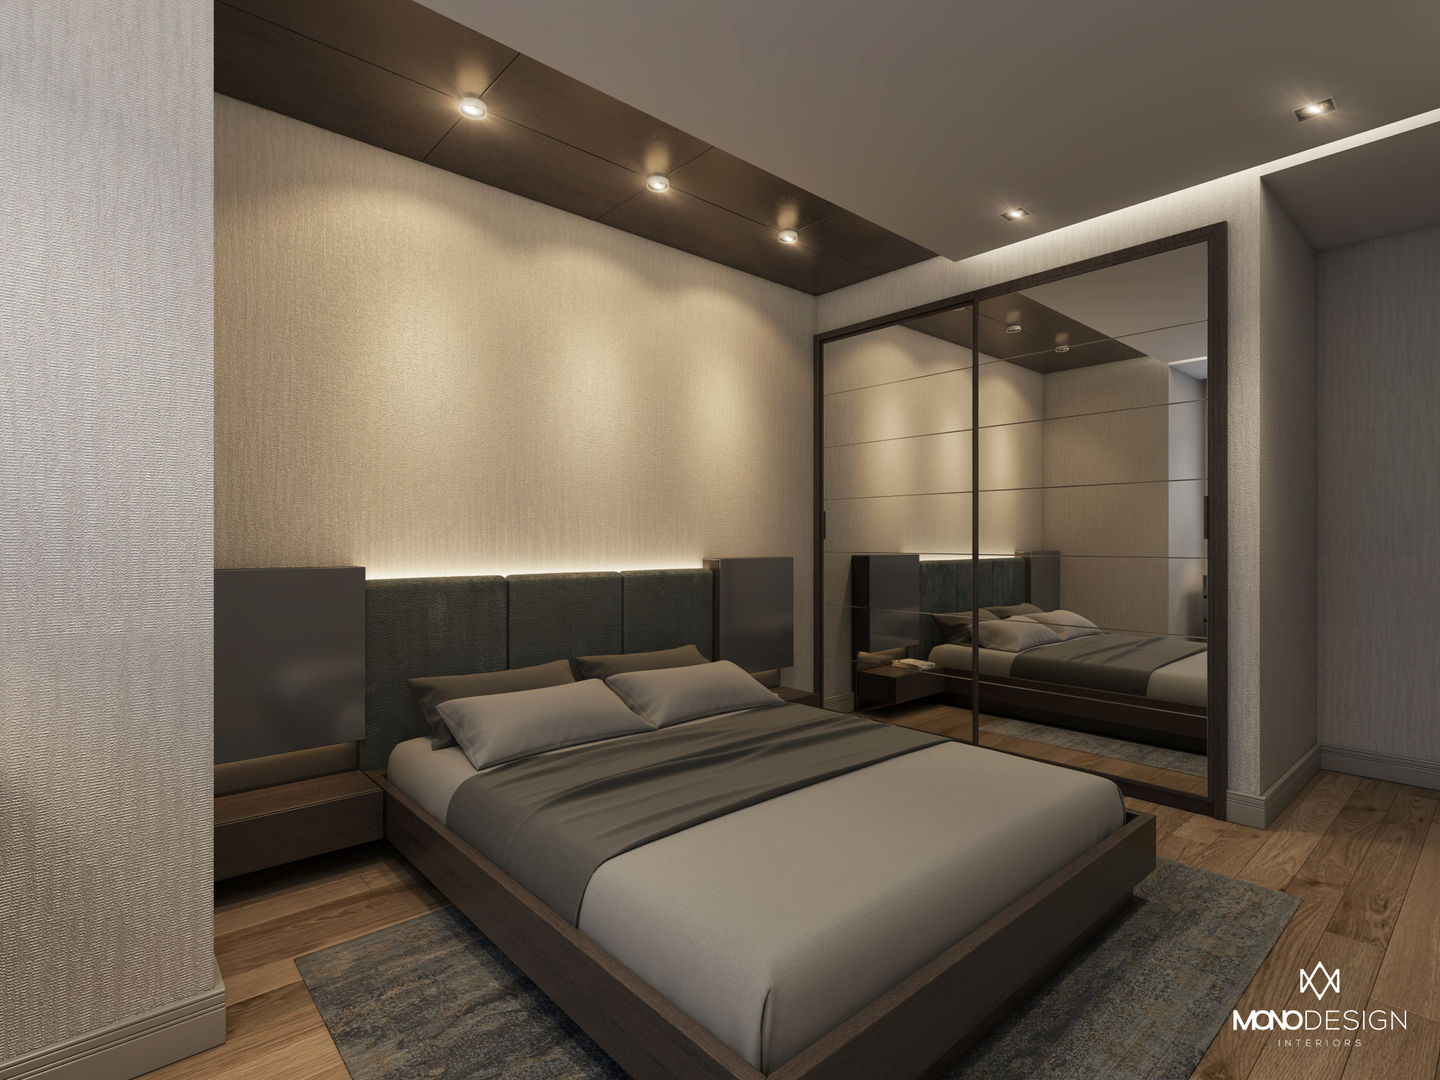 GÜL SOKAK DAİRE, Monodesign İçmimarlık Monodesign İçmimarlık Modern Bedroom